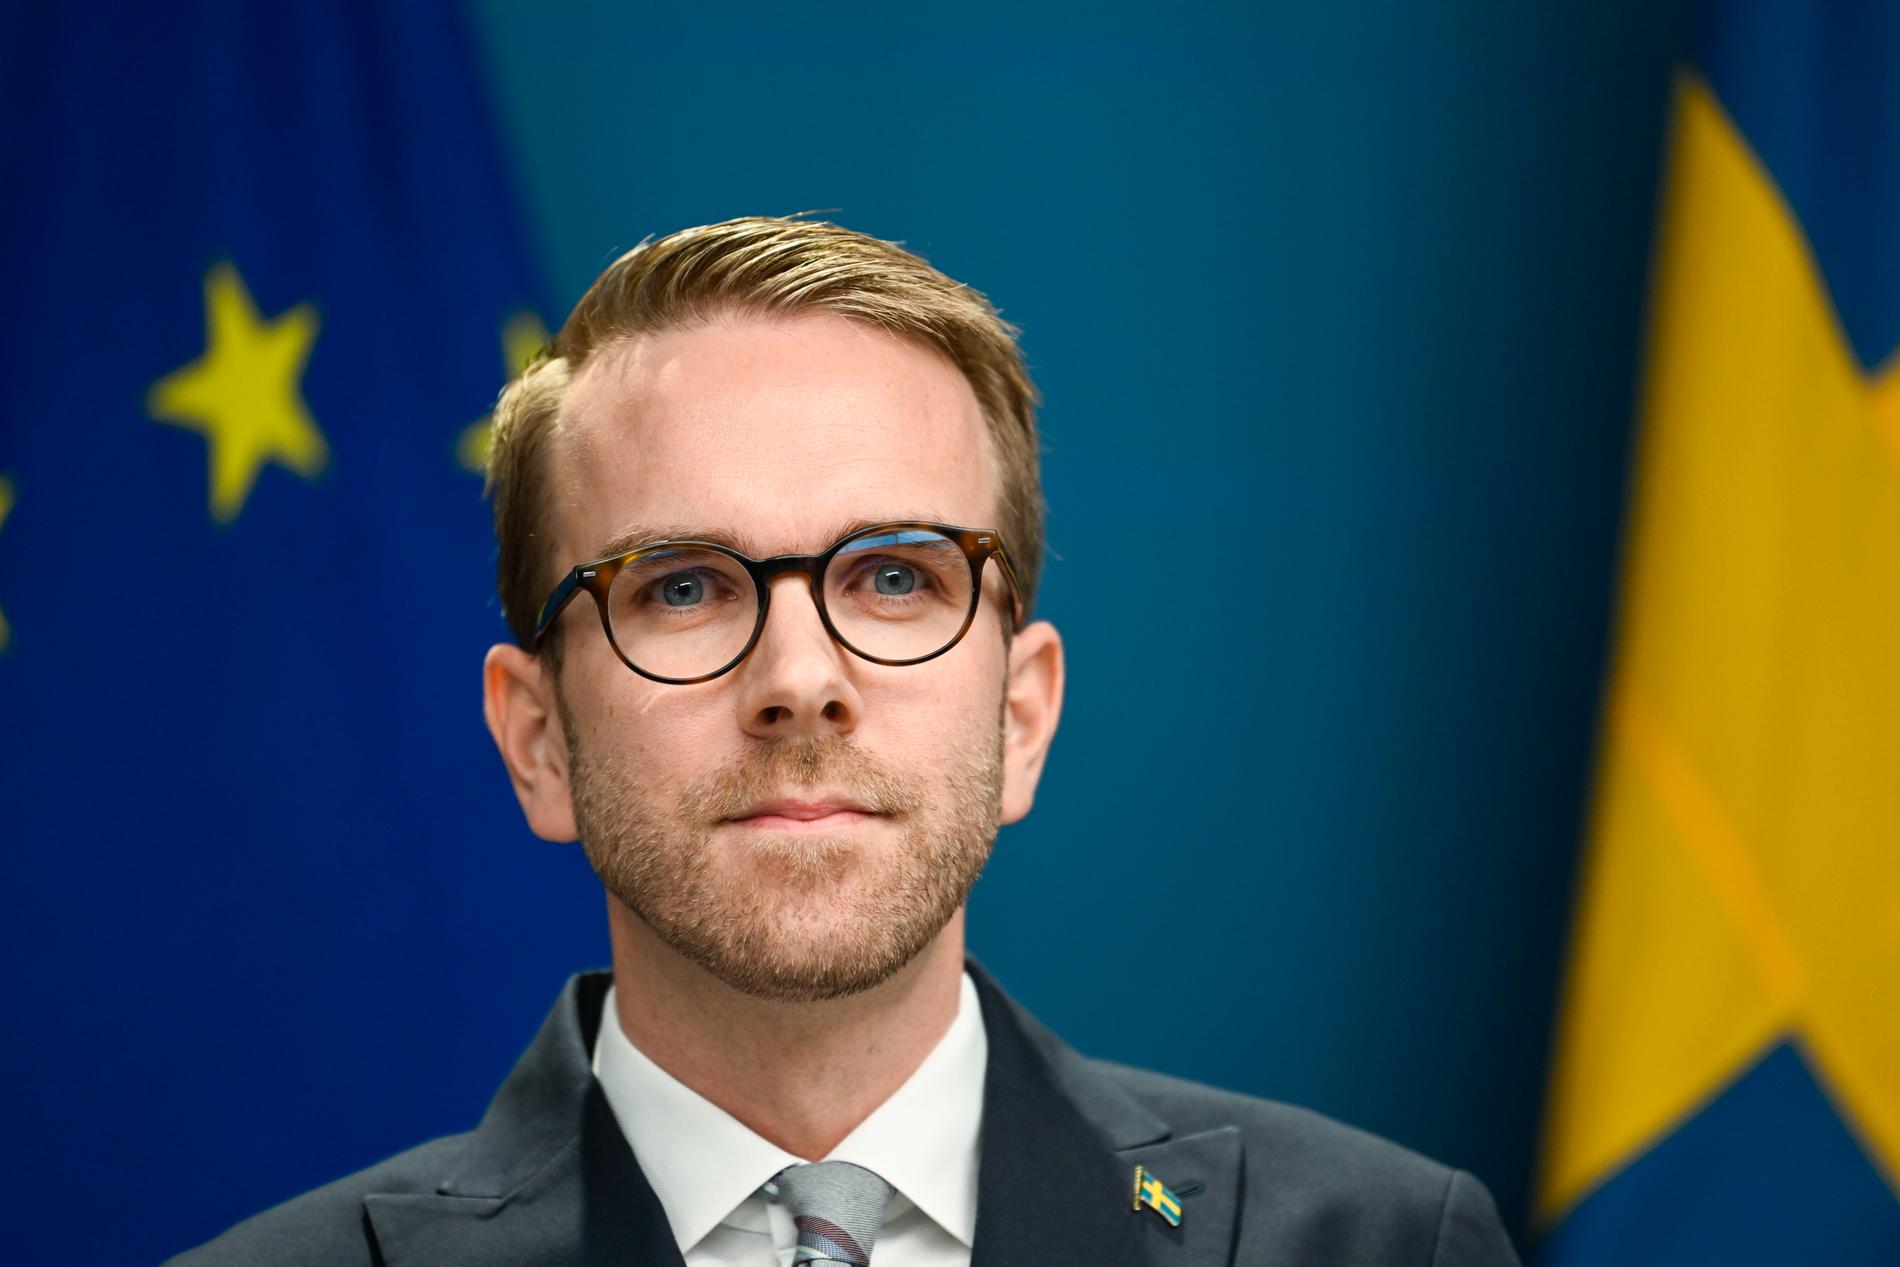 Infrastruktur- och bostadsminister Andreas Carlson (KD). Arkivbild.